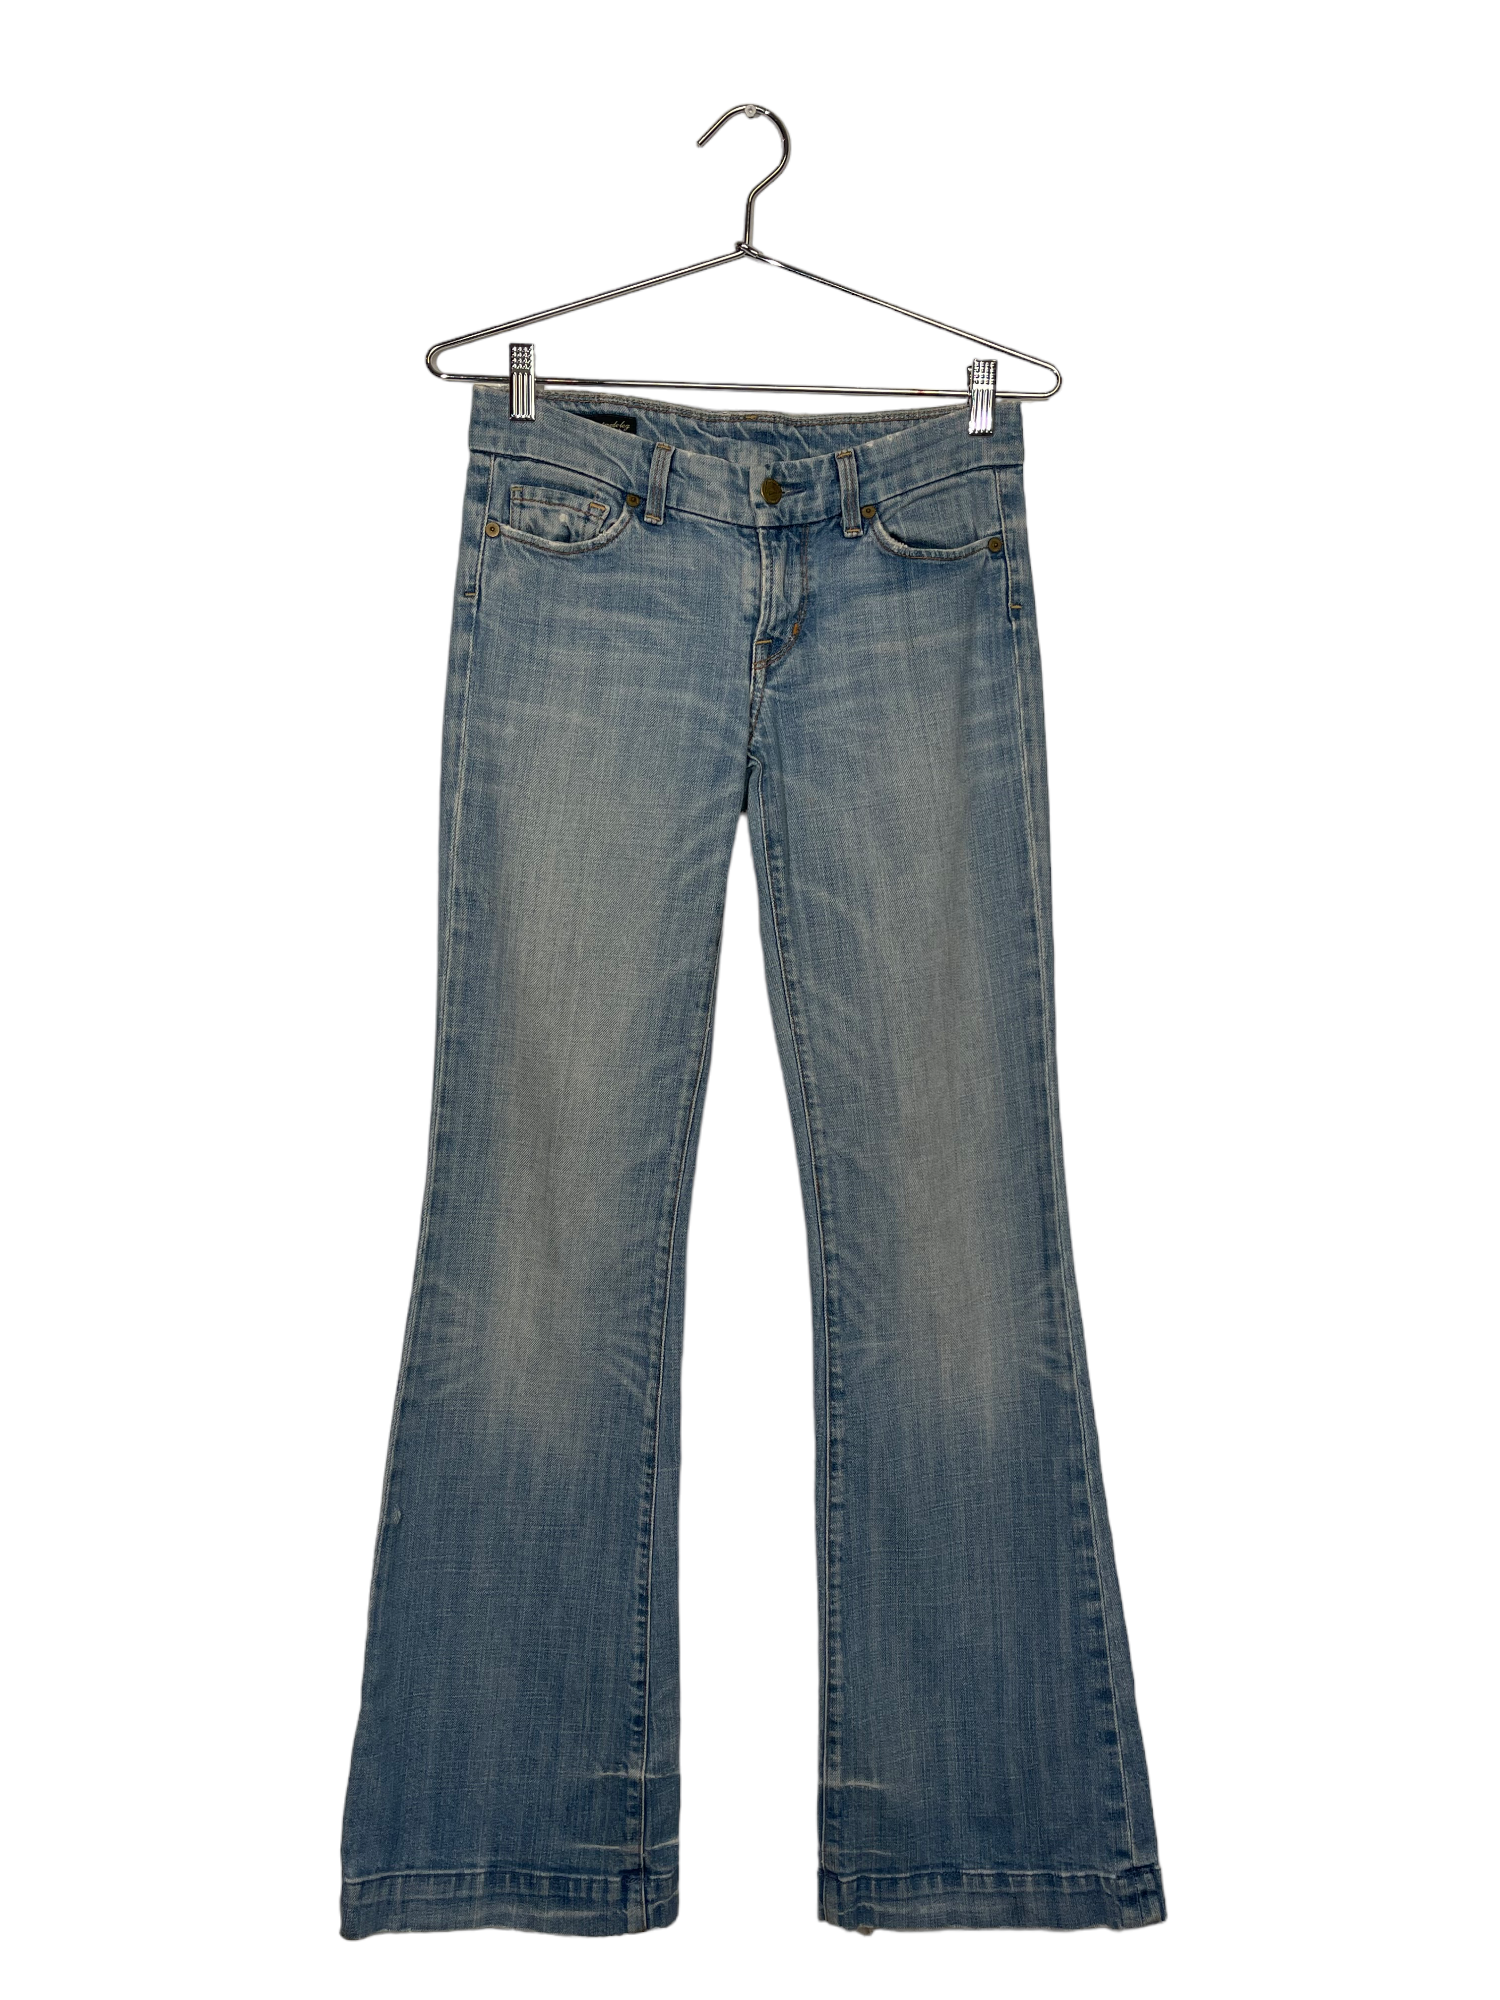 Denim Flare Jeans With Embellished Back Pockets